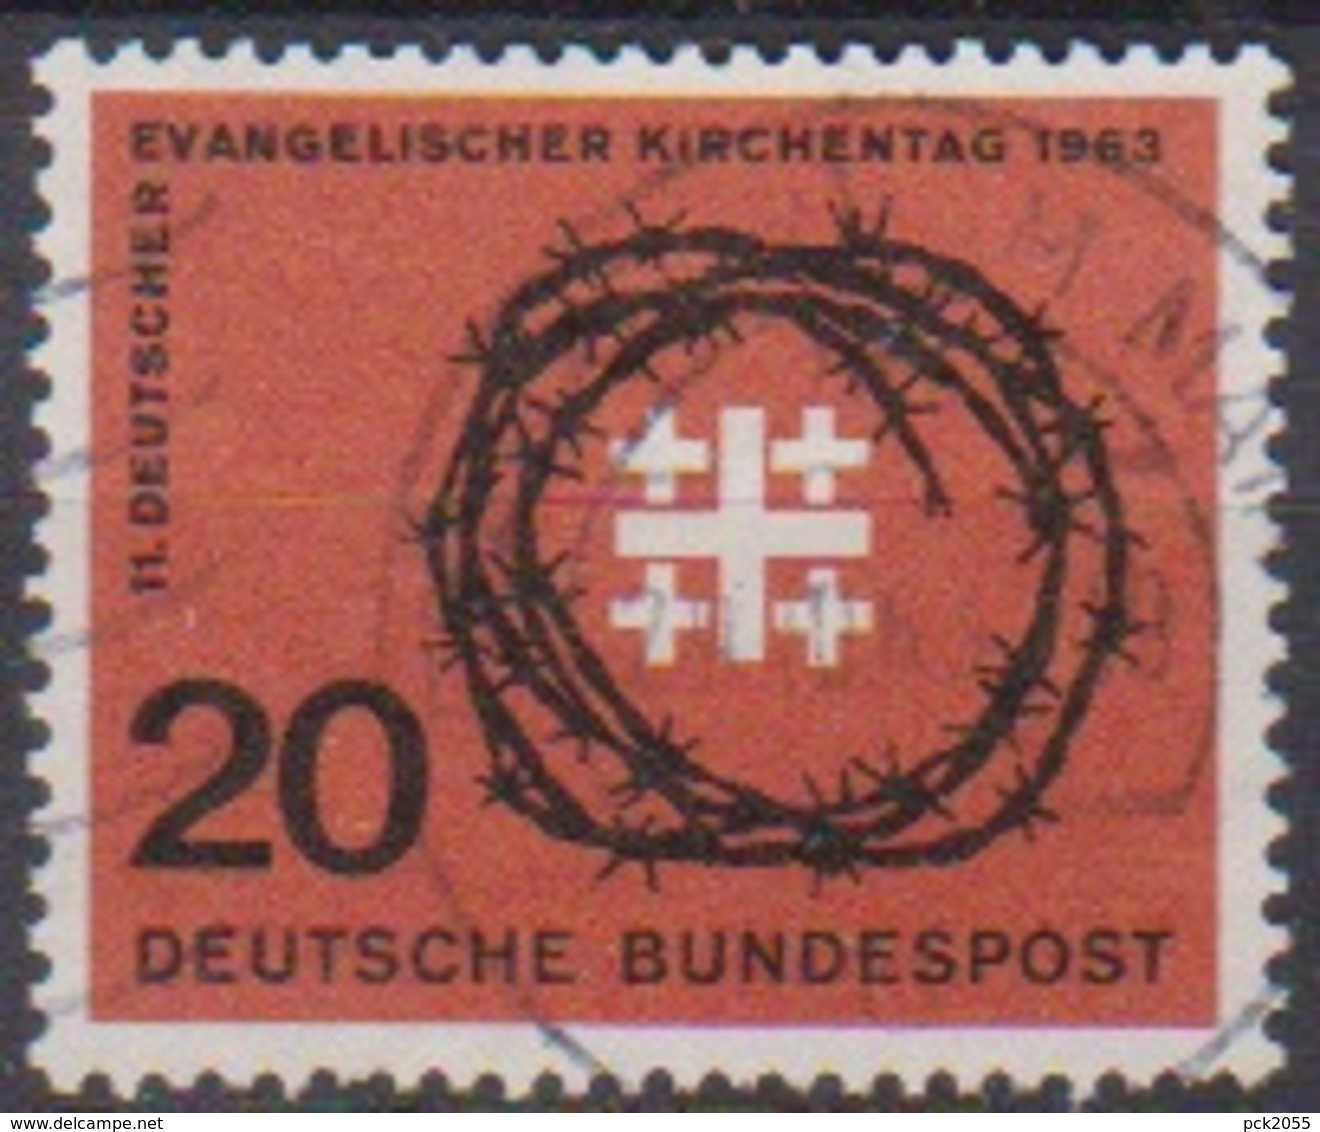 BRD 1963 MiNr.405 Deutscher Evangelischer Kirchentag ( A686 ) Günstige Versandkosten - Used Stamps